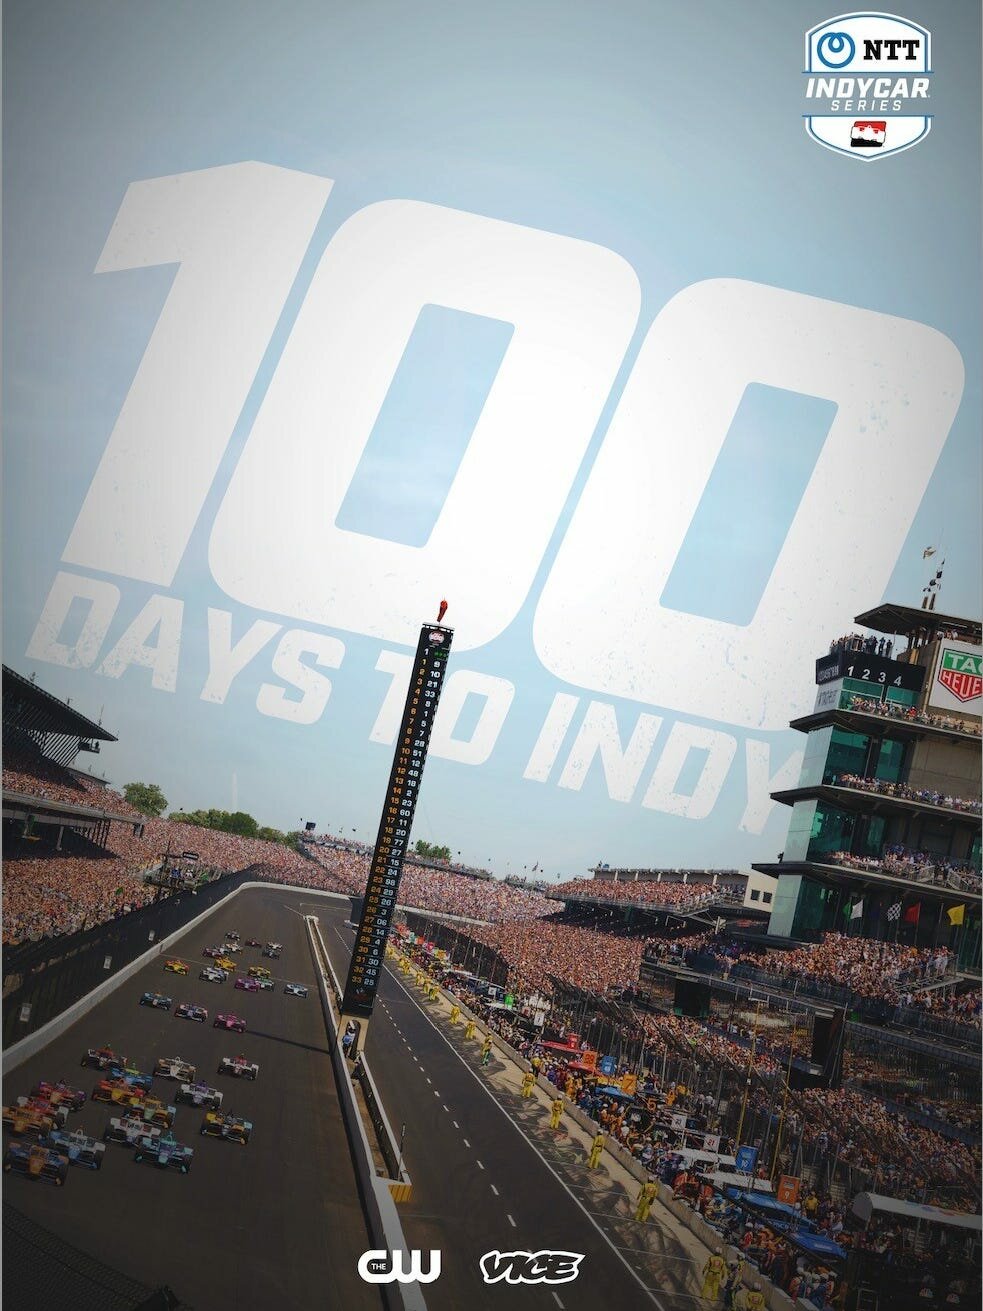 100 Days to Indy ne zaman